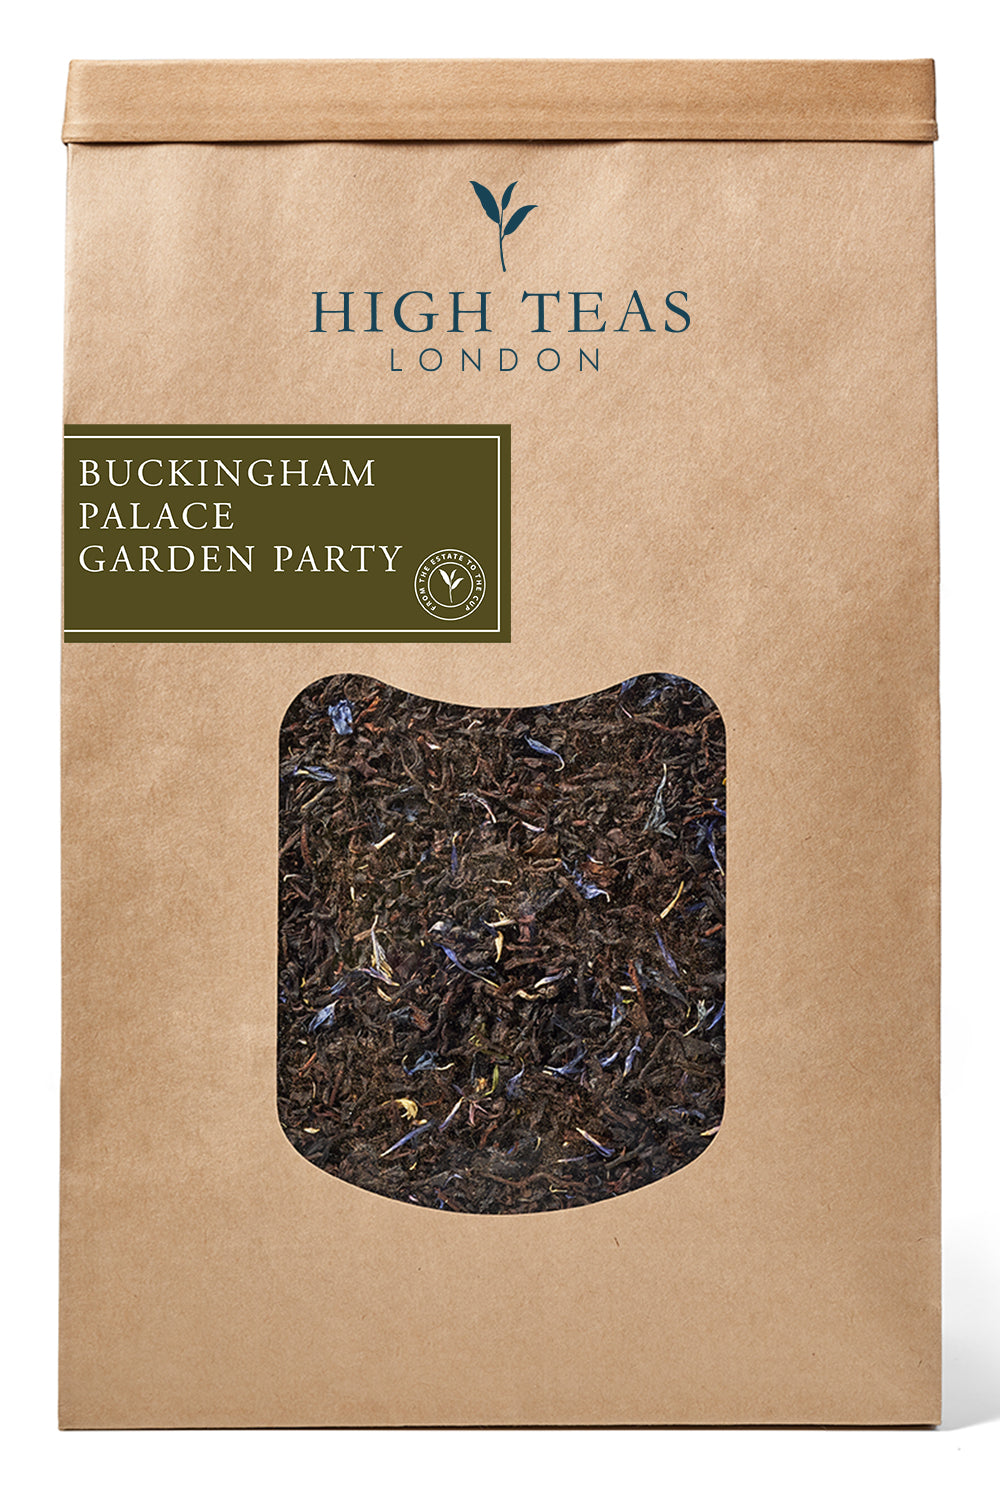 Buckingham Palace Garden Party-500g-Loose Leaf Tea-High Teas